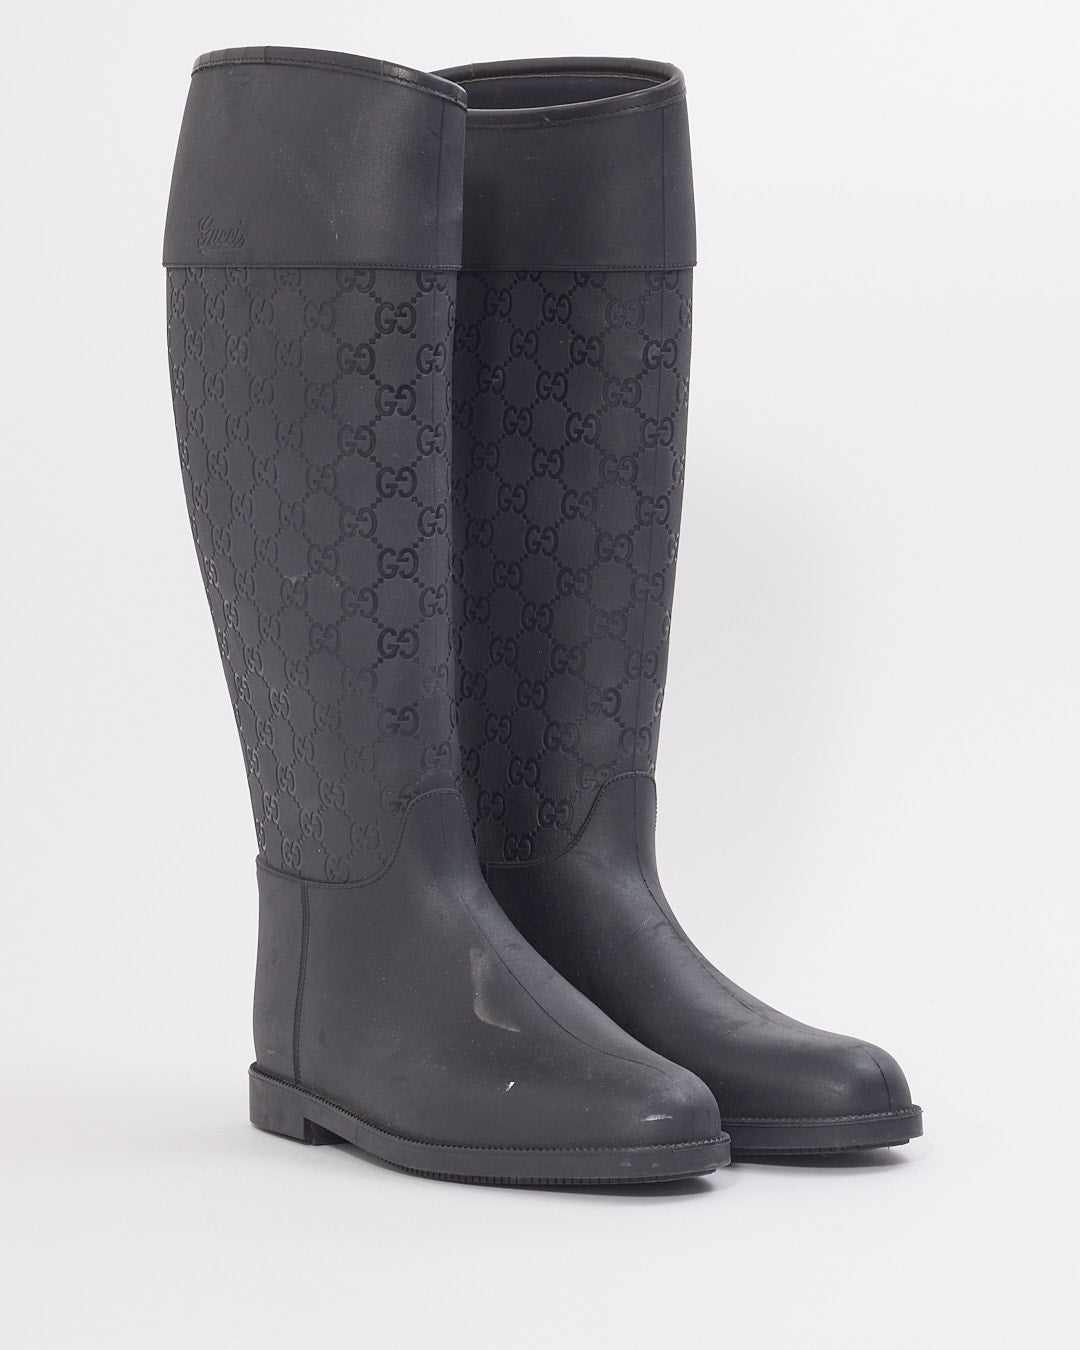 Gucci Black GG Rubber Rain Boots - 39